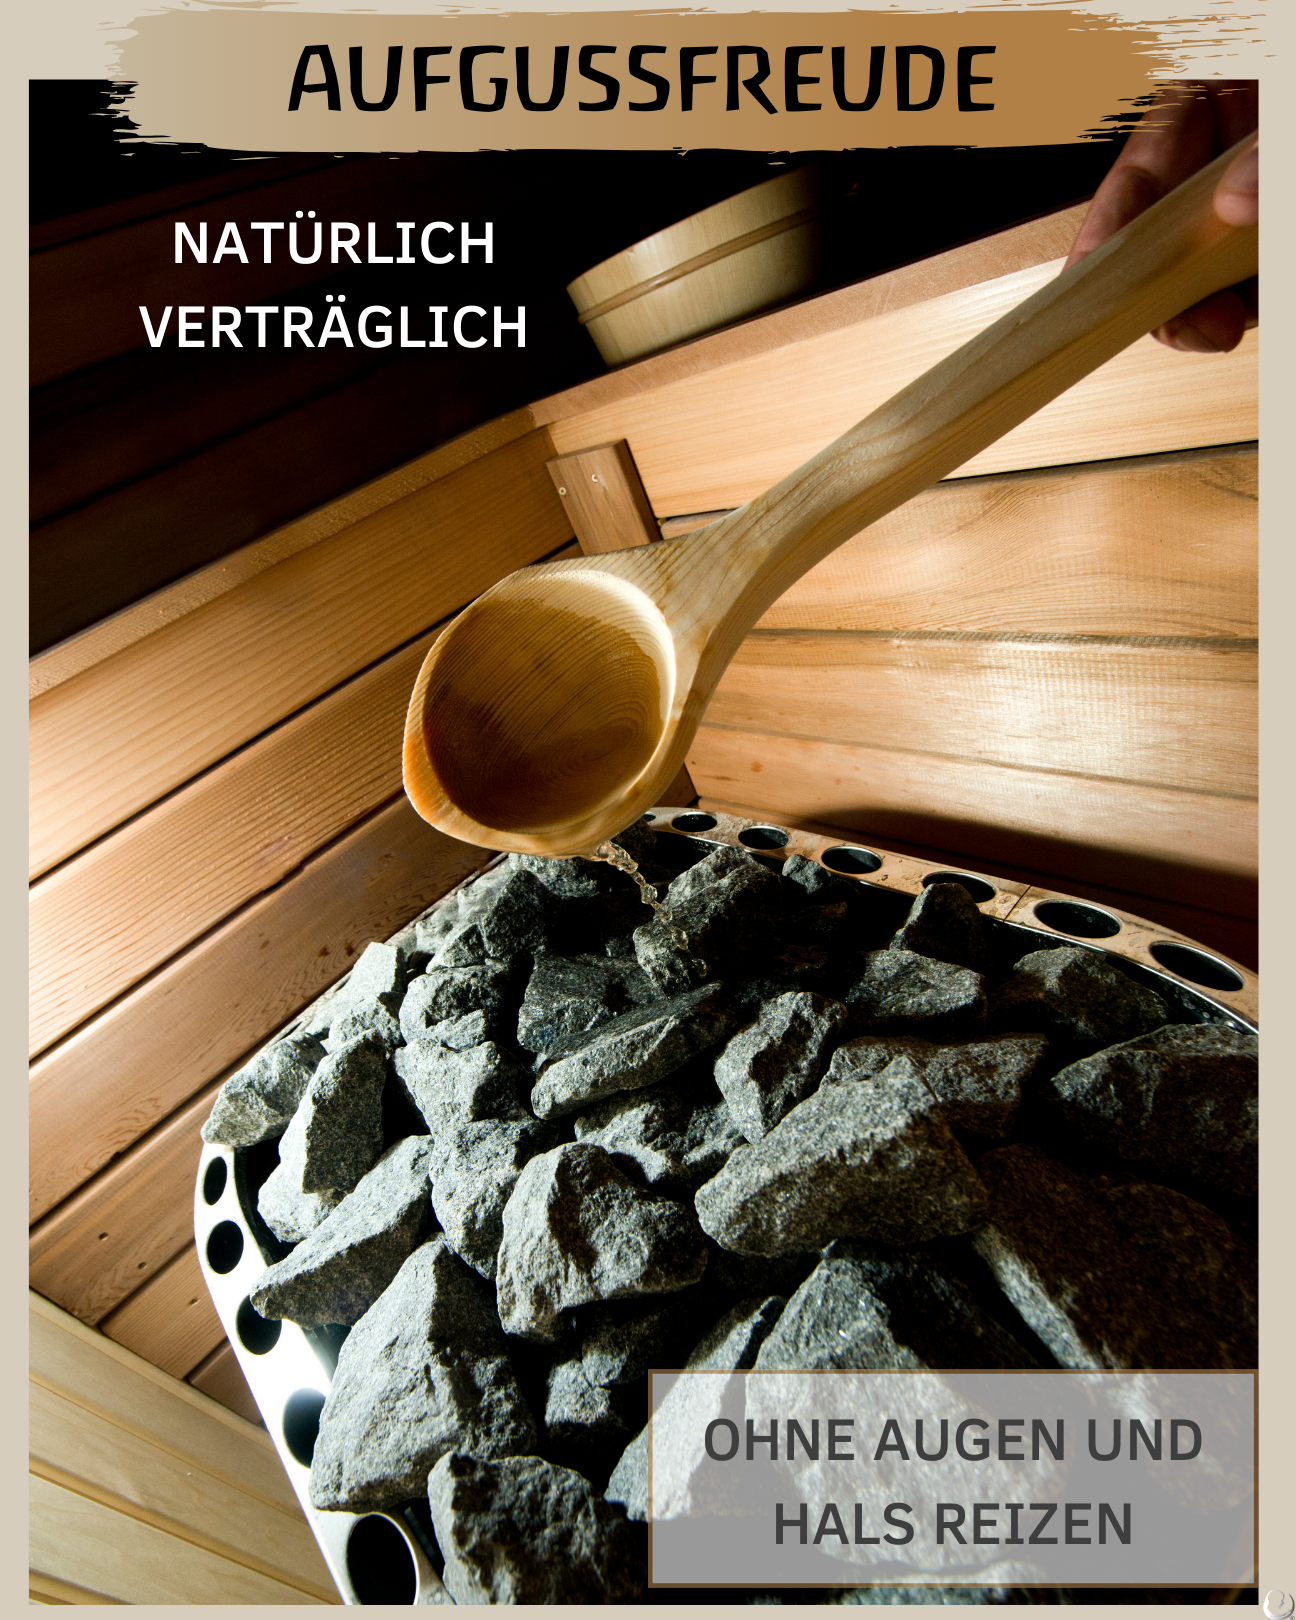 BIO Saunaaufguss Alpenquelle (Zirbe/Latschenkiefer/Minze) hochdosiertes ätherisches Öl (100ml)